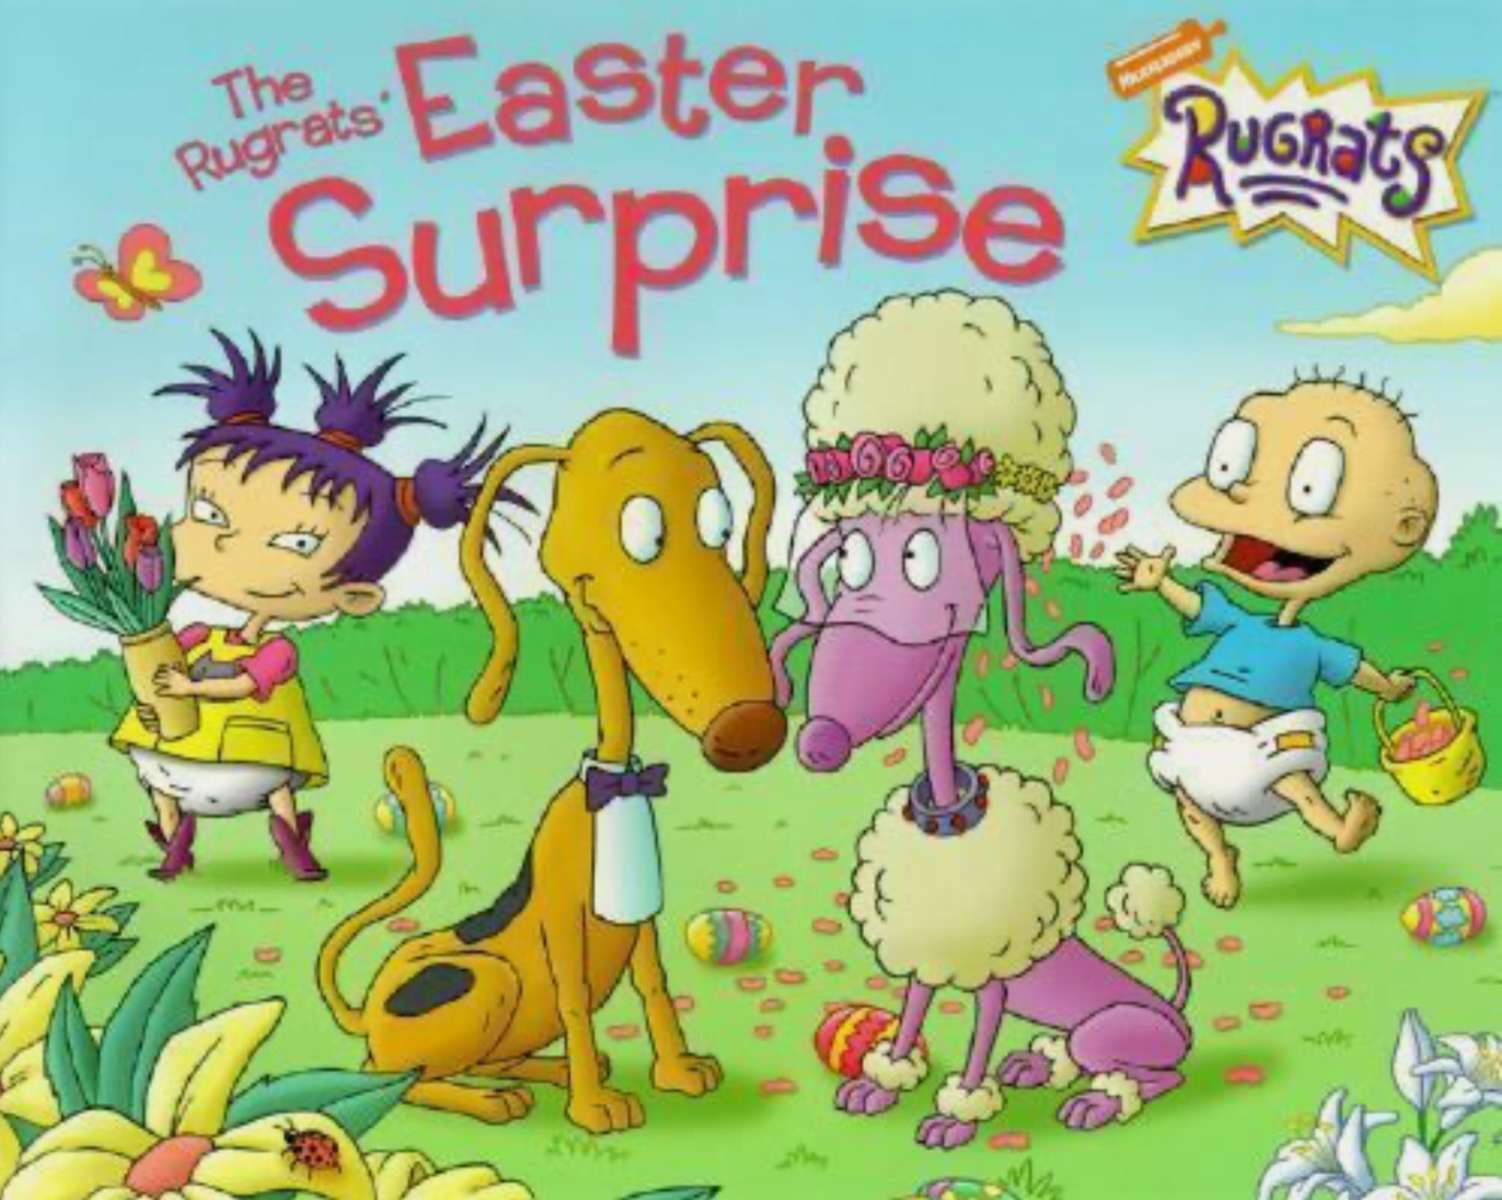 La sorpresa de Pascua de los Rugrats (libro de bolsillo) rompecabezas en línea